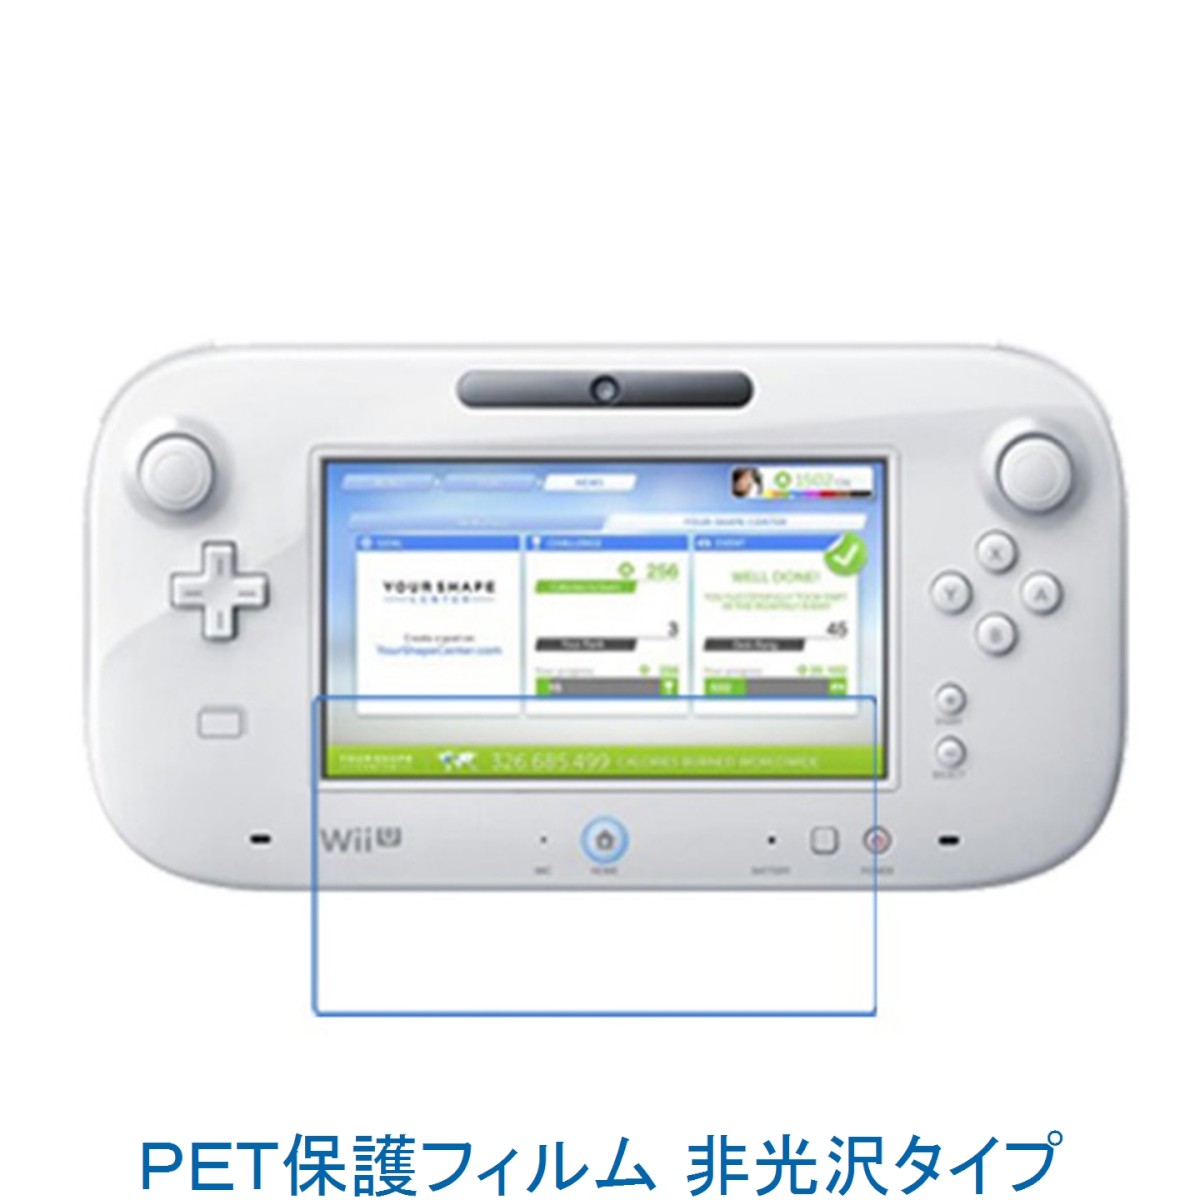 【2枚】 Wii U GamePad 専用コントロー